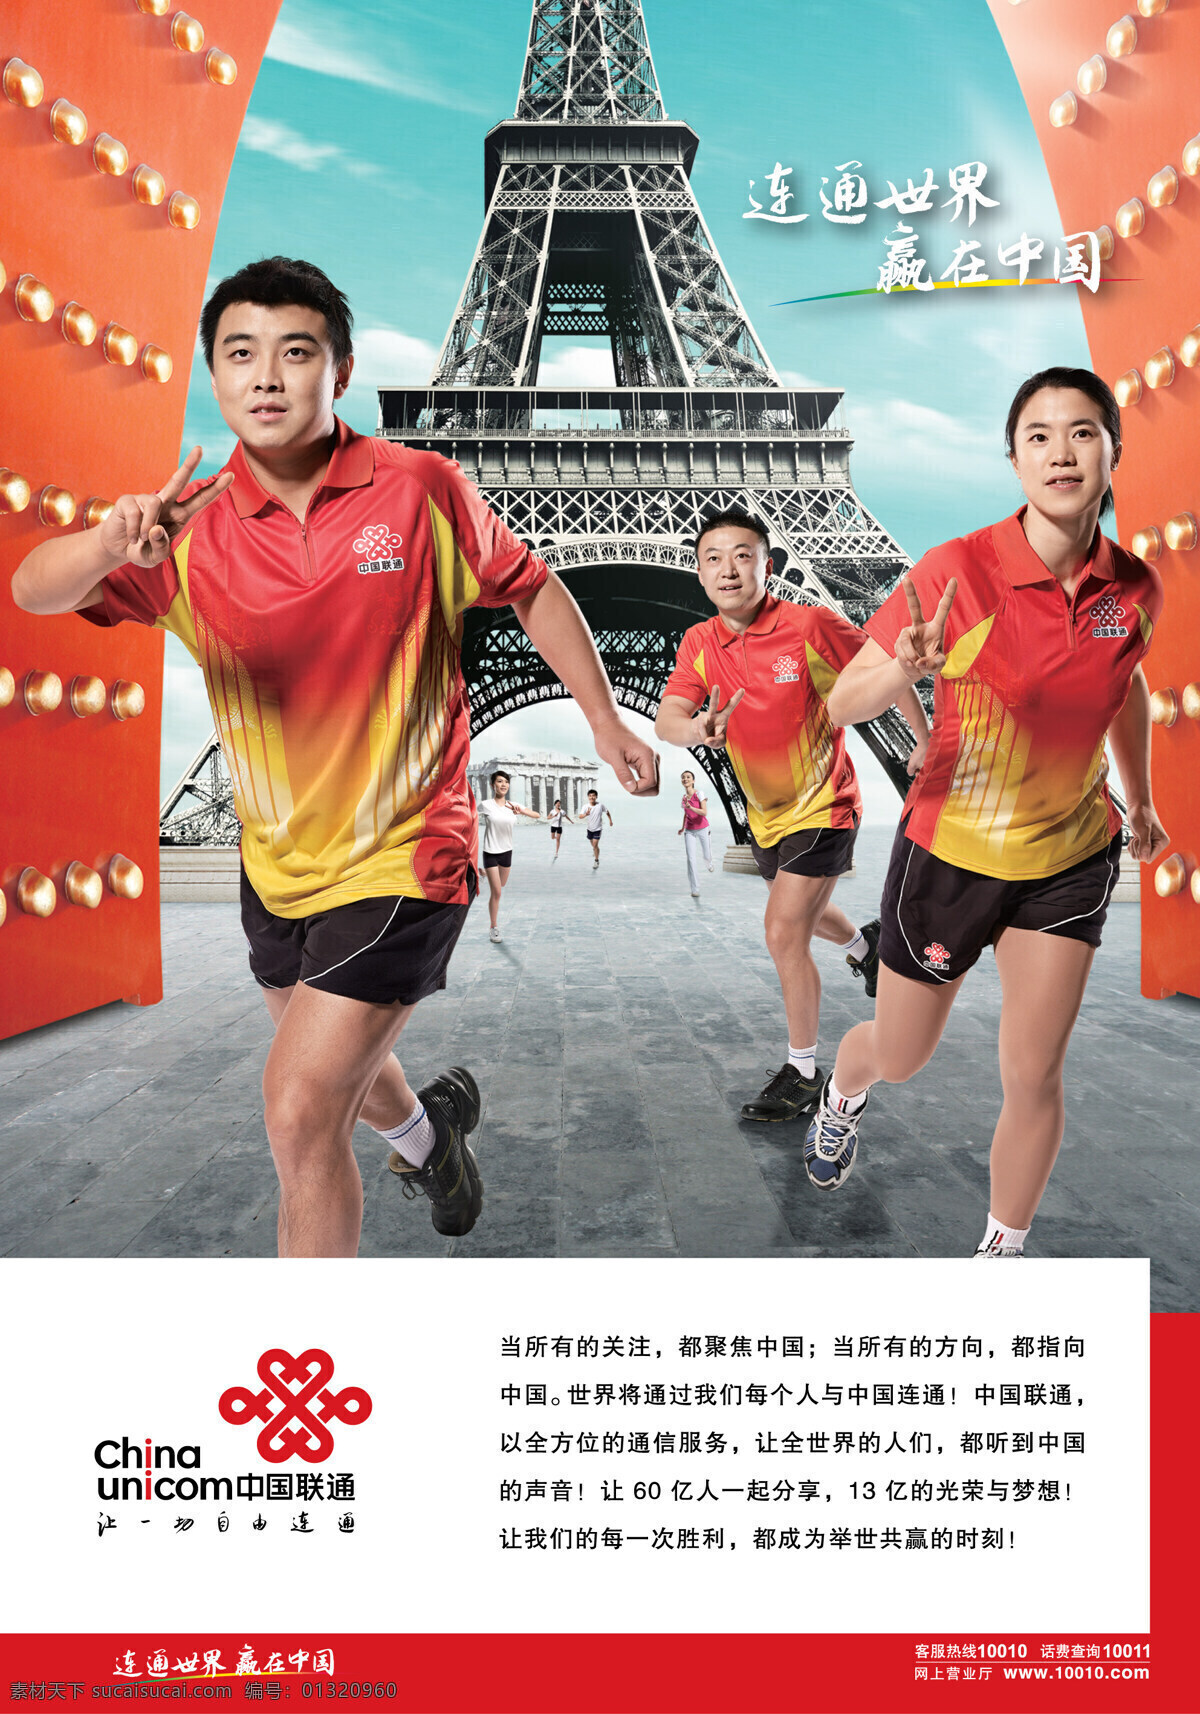 300 奥运 联通 联通广告 设计图库 连通 世界 嬴 中国 海报 连通世界 嬴在中国 其他海报设计